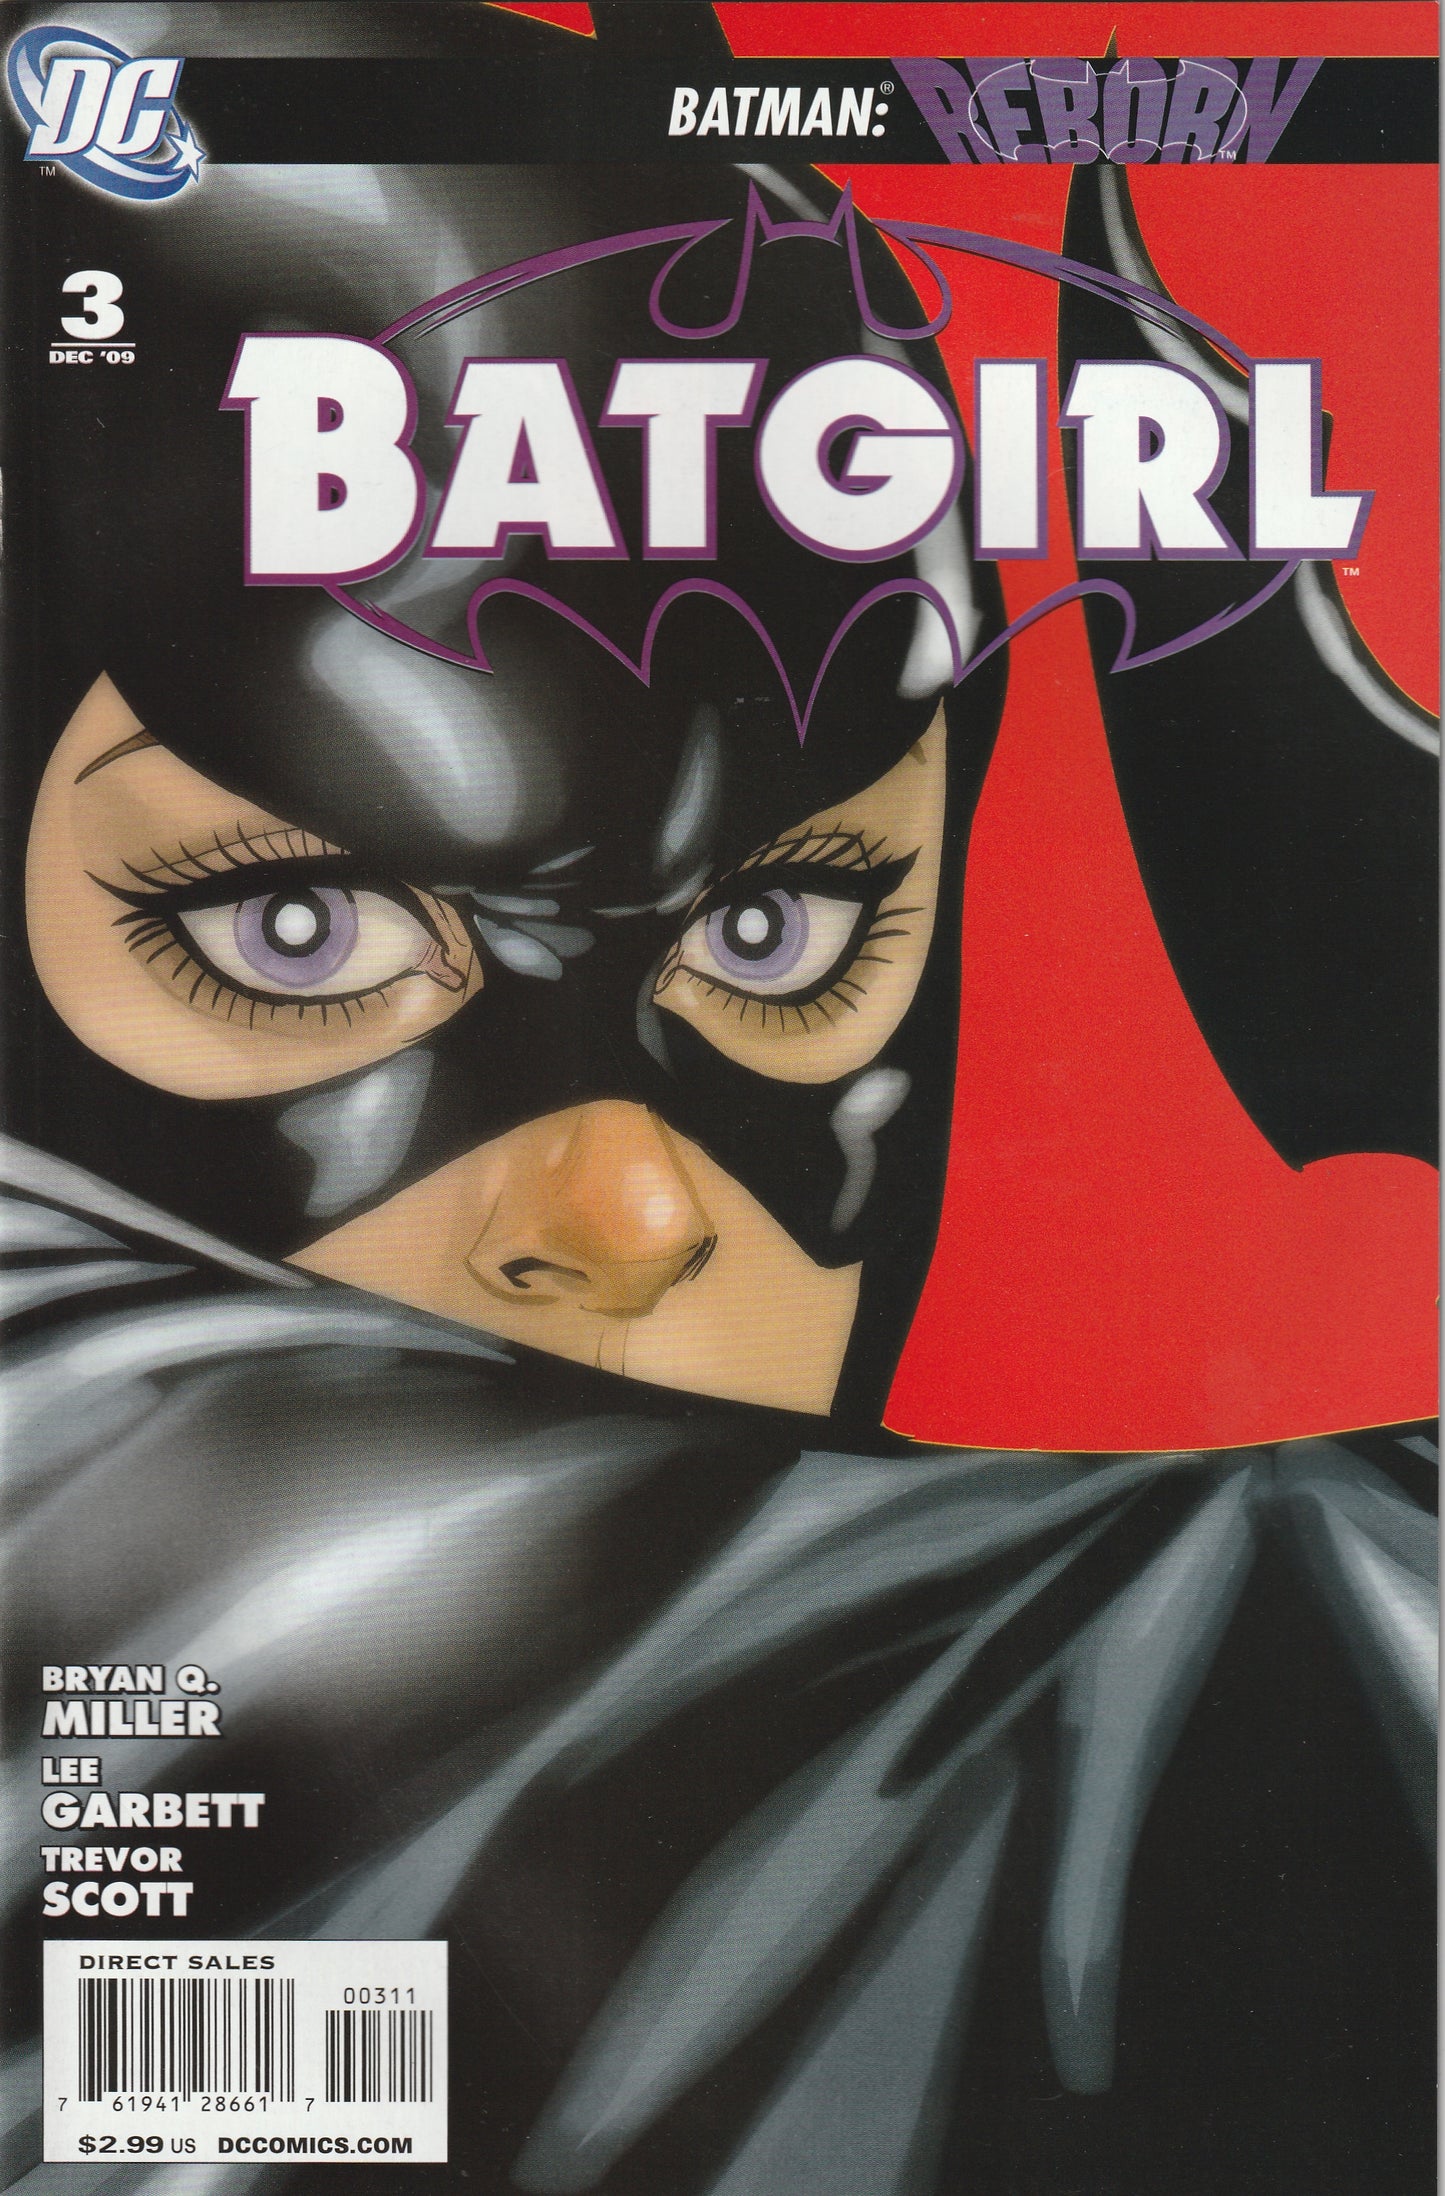 Batgirl #3 (Vol 3, 2009)